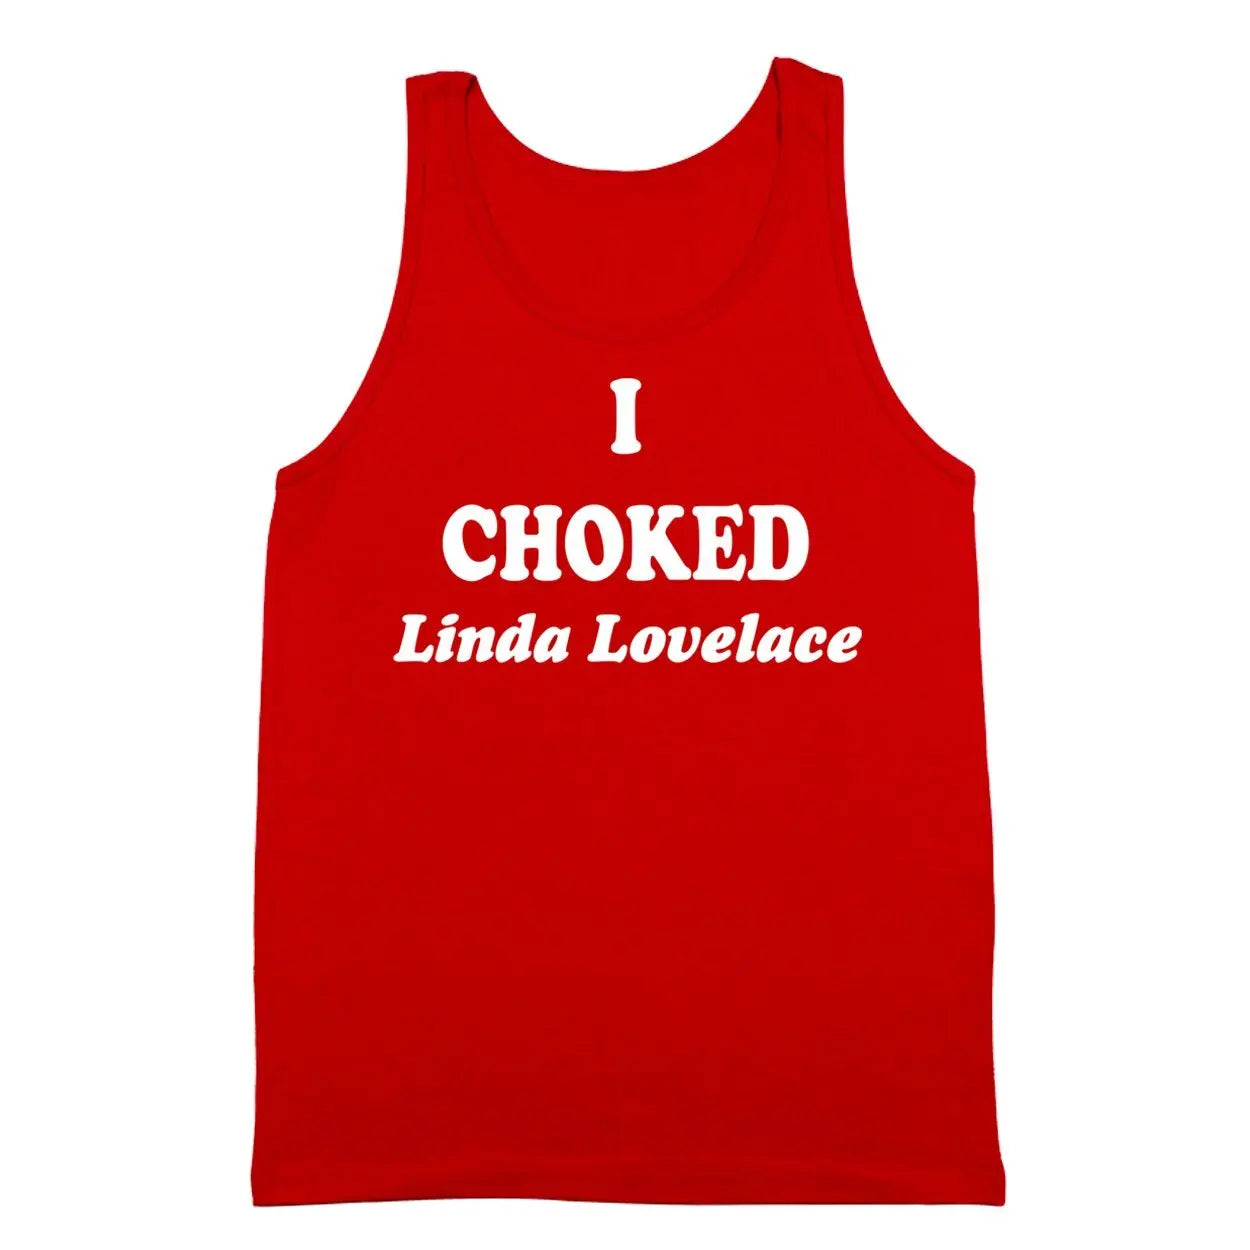 I Choked Linda Lovelace Tshirt - Donkey Tees